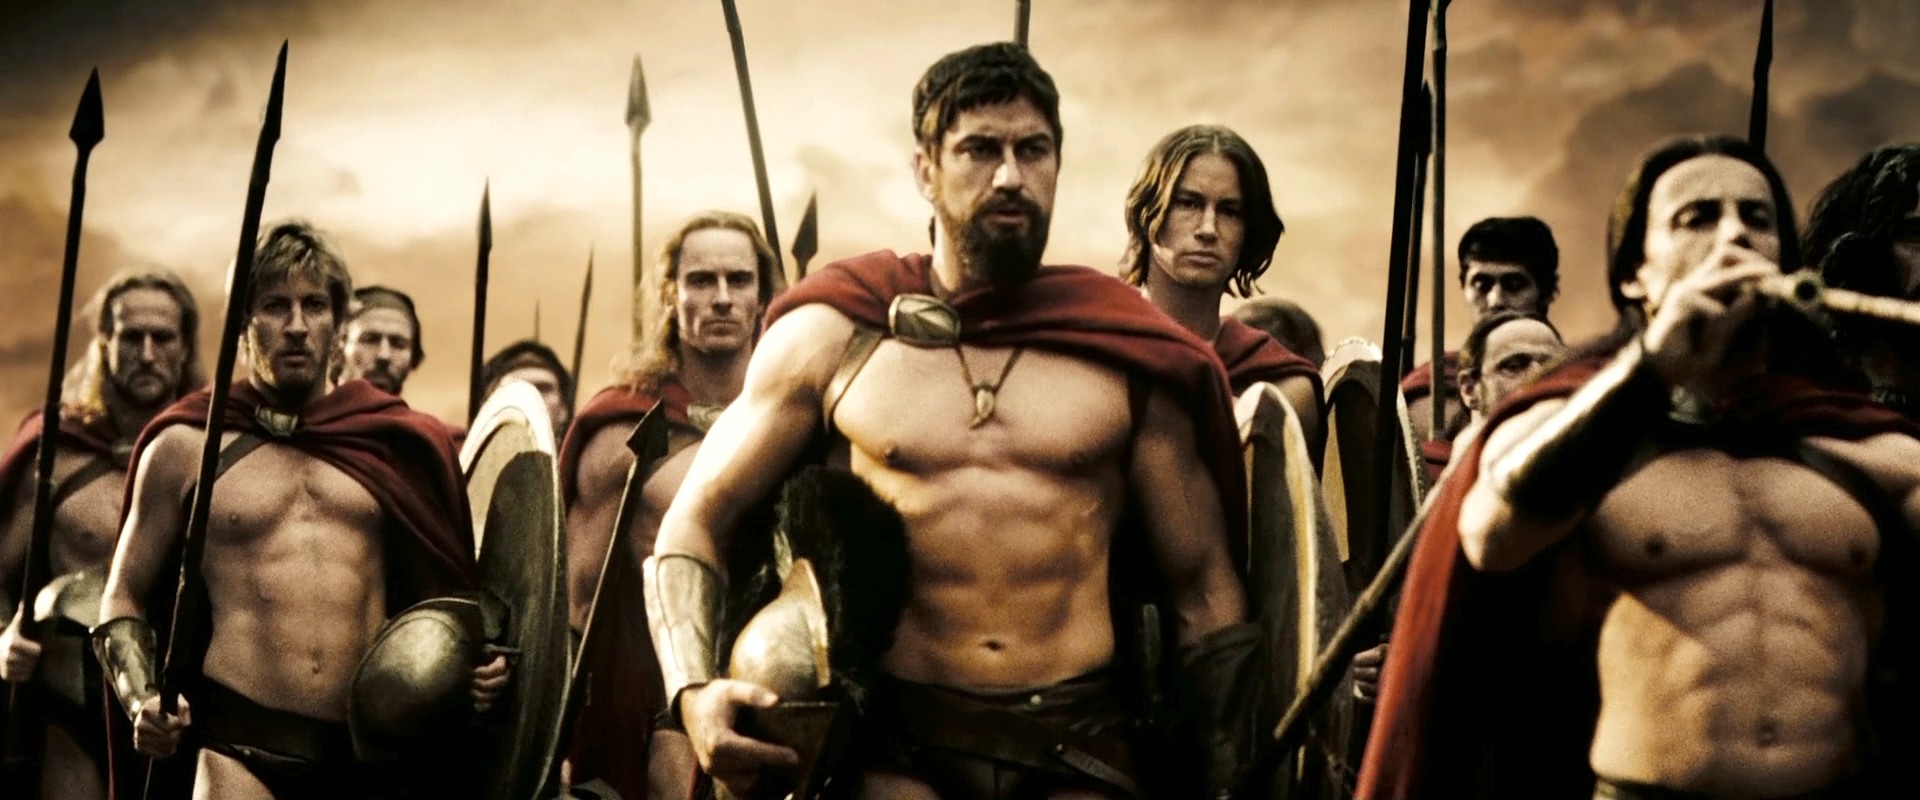 Los falsos abdominales de los espartanos en la película "300 ...